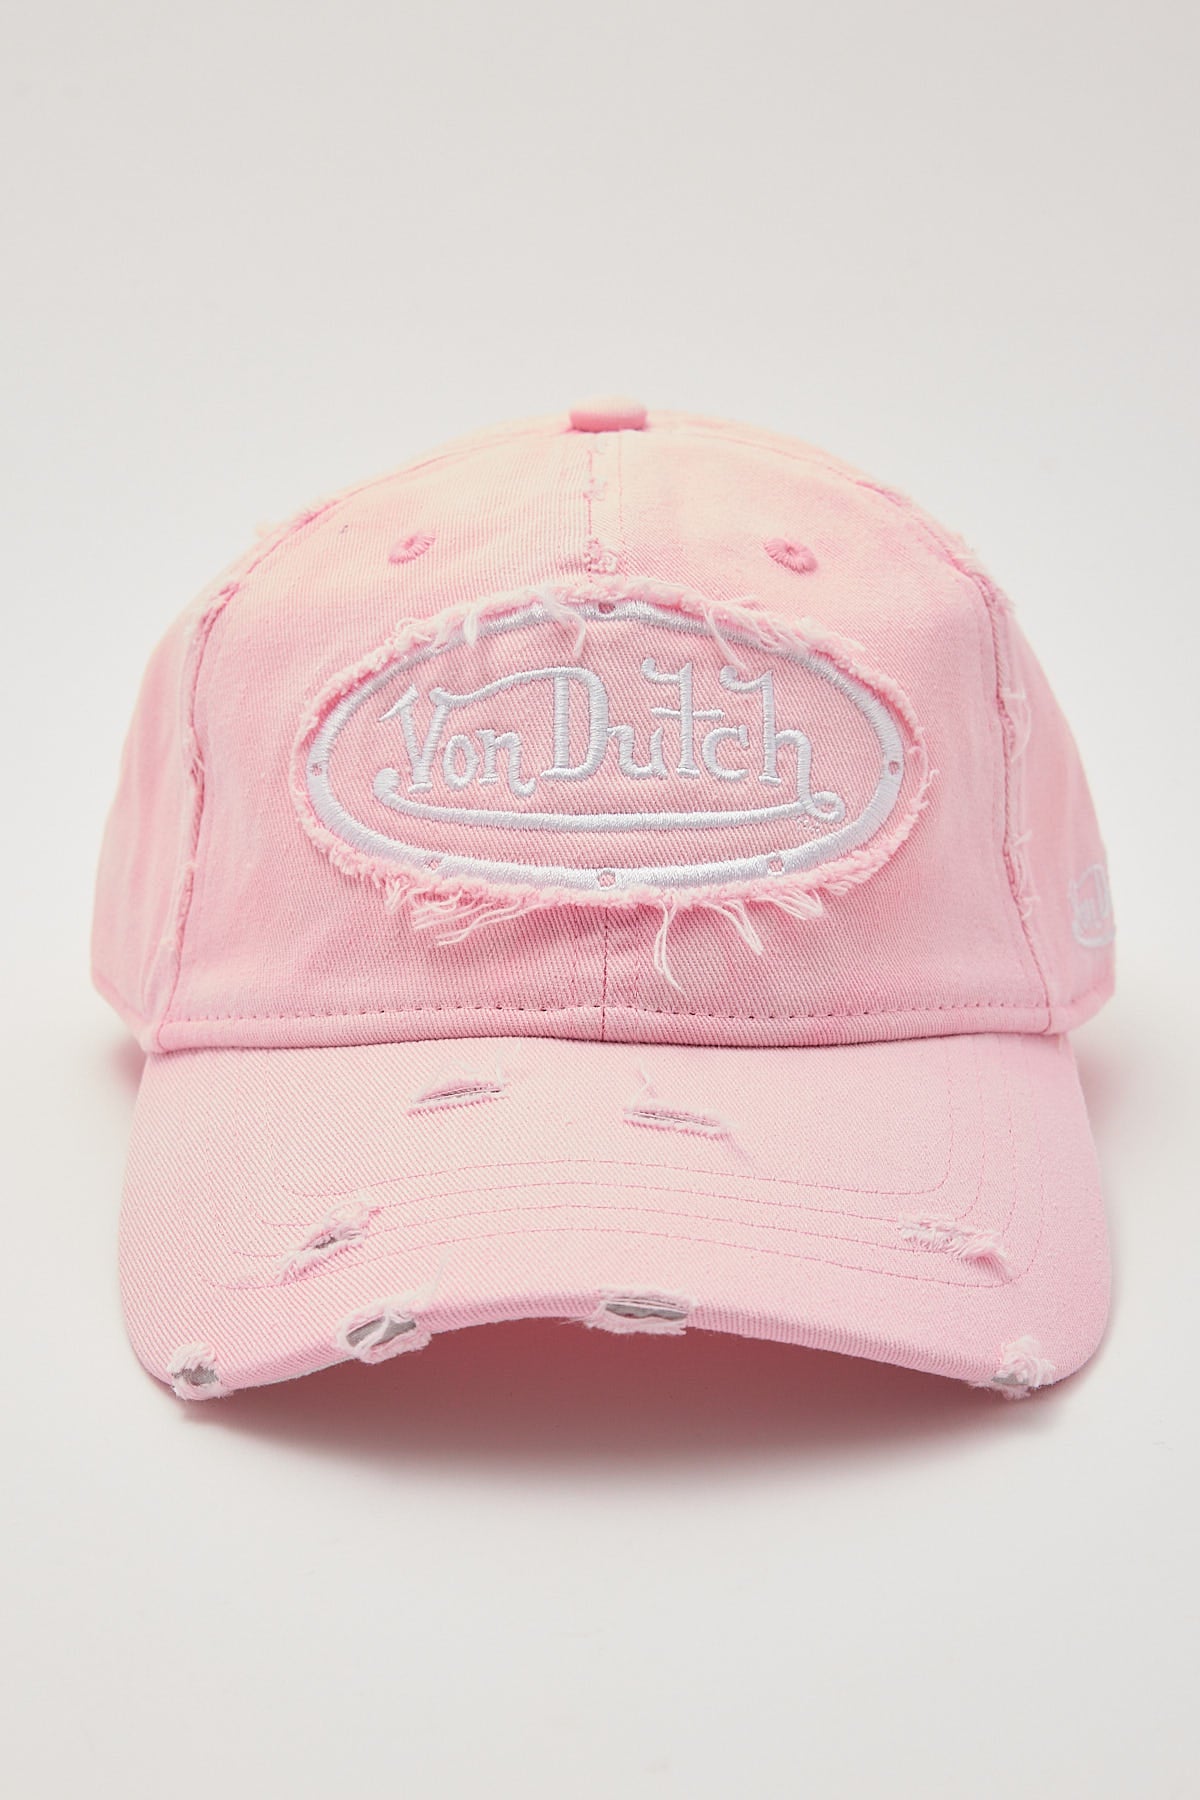 Von Dutch Washed Pink Dad Cap Pink